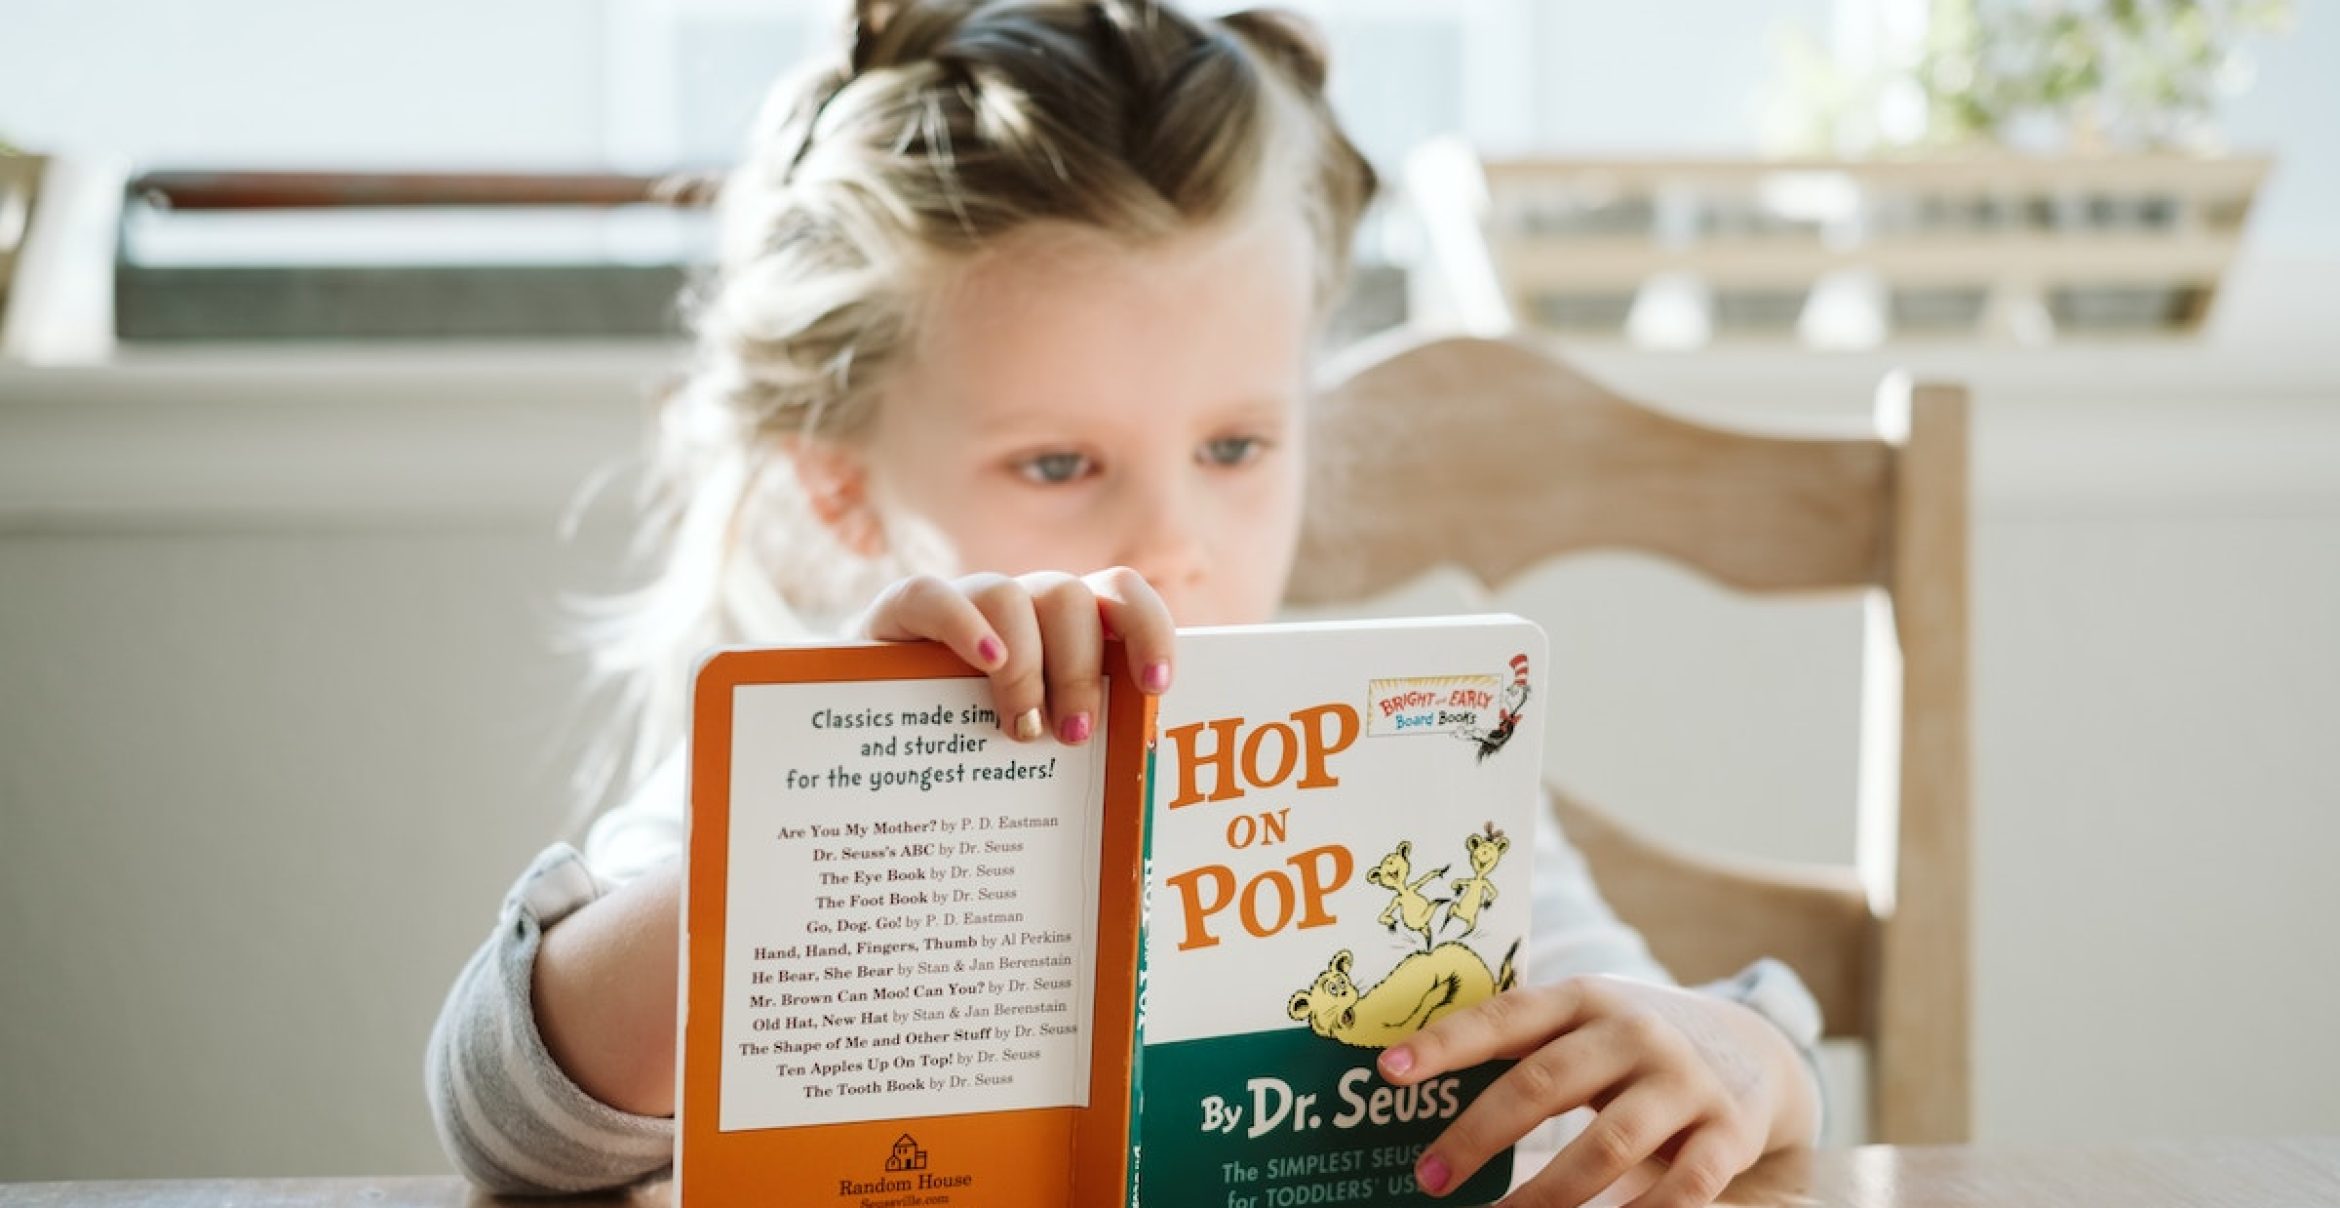 Deutsche Kinder lesen und schreiben schlechter